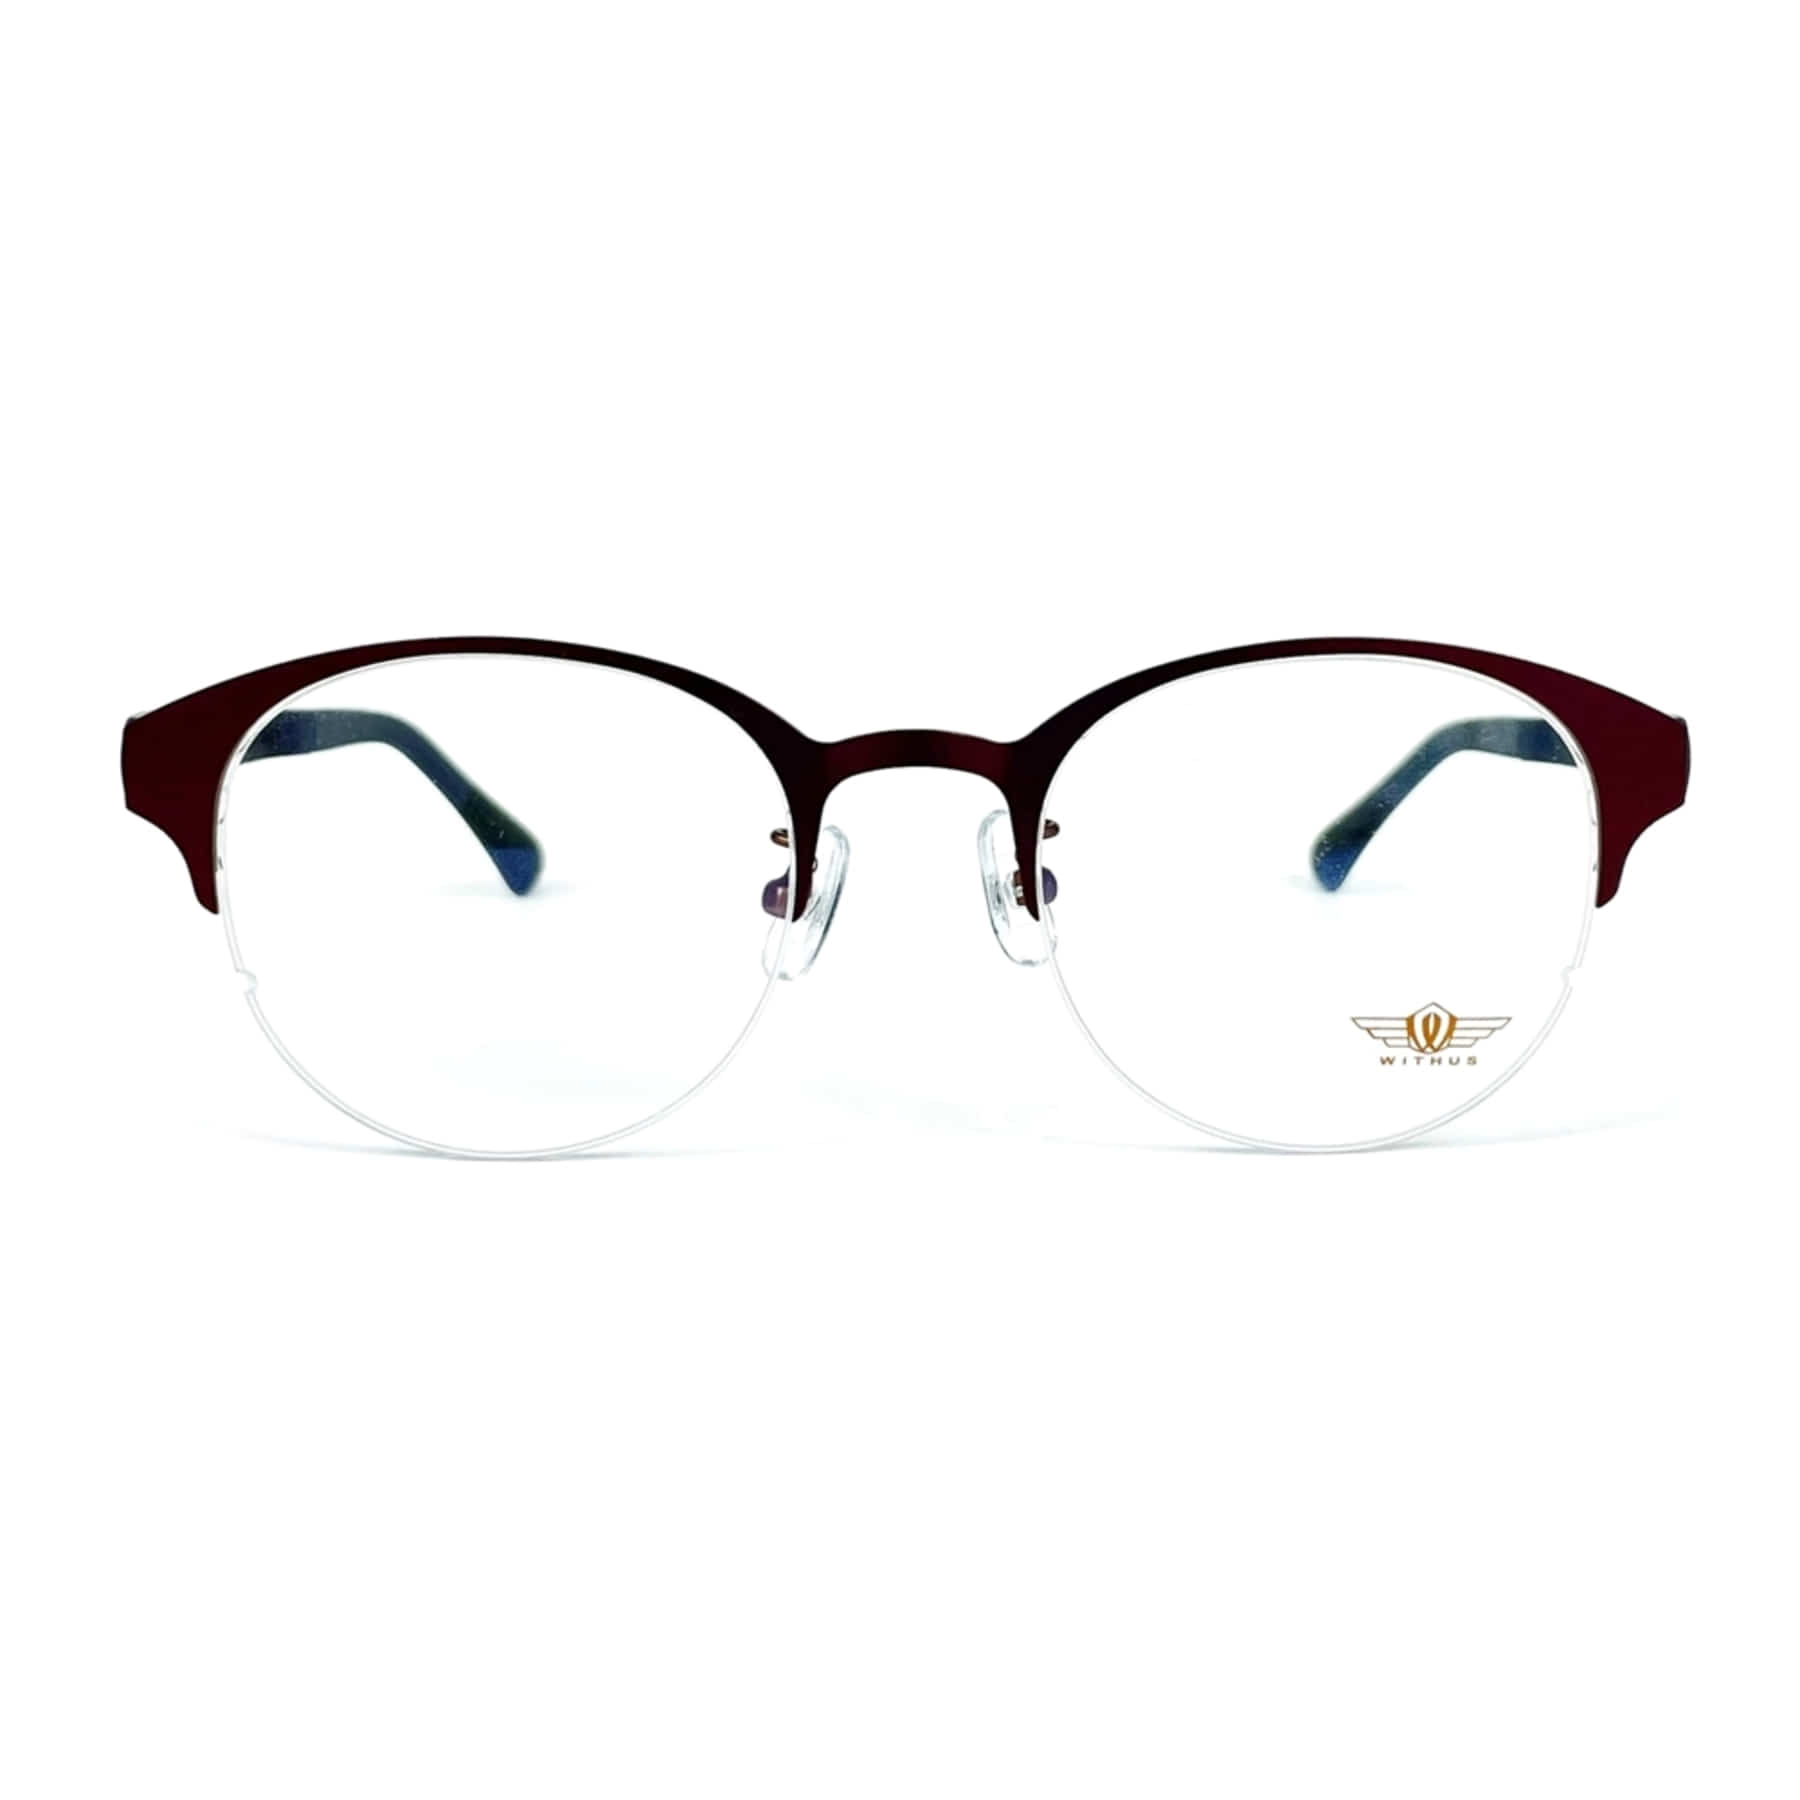 WITHUS-7347, Korean glasses, sunglasses, eyeglasses, glasses